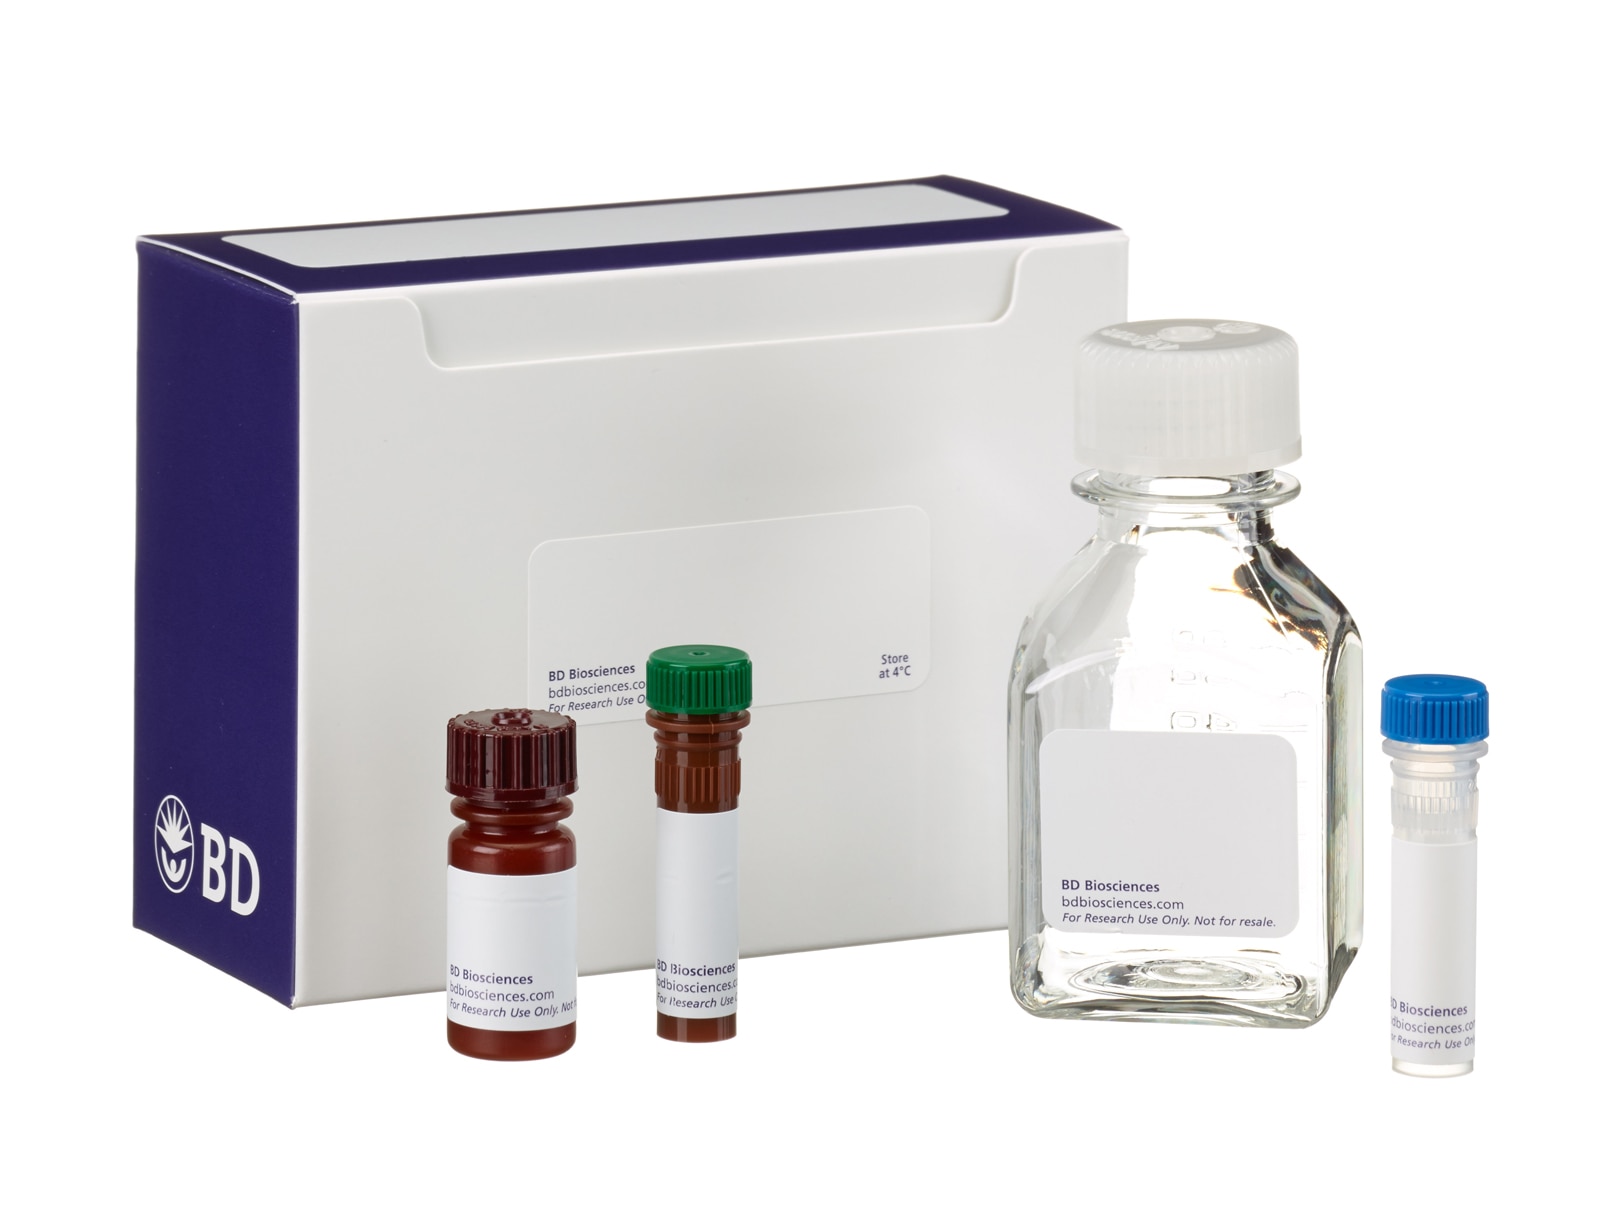 FITC Annexin V Apoptosis Detection Kit II